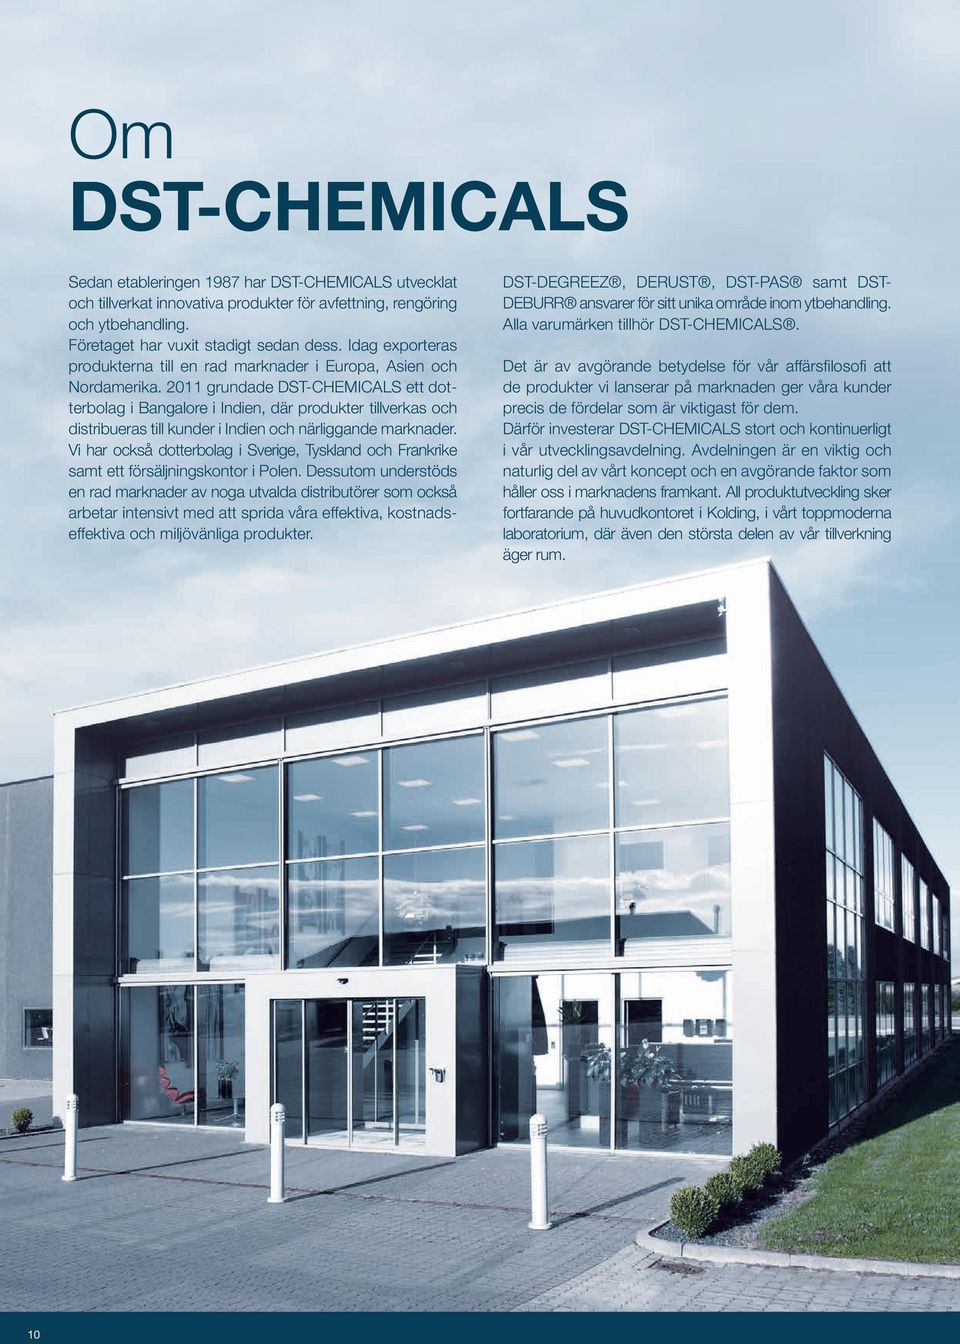 2011 grundade DST-CHEMICALS ett dotterbolag i Bangalore i Indien, där produkter tillverkas och distribueras till kunder i Indien och närliggande marknader.